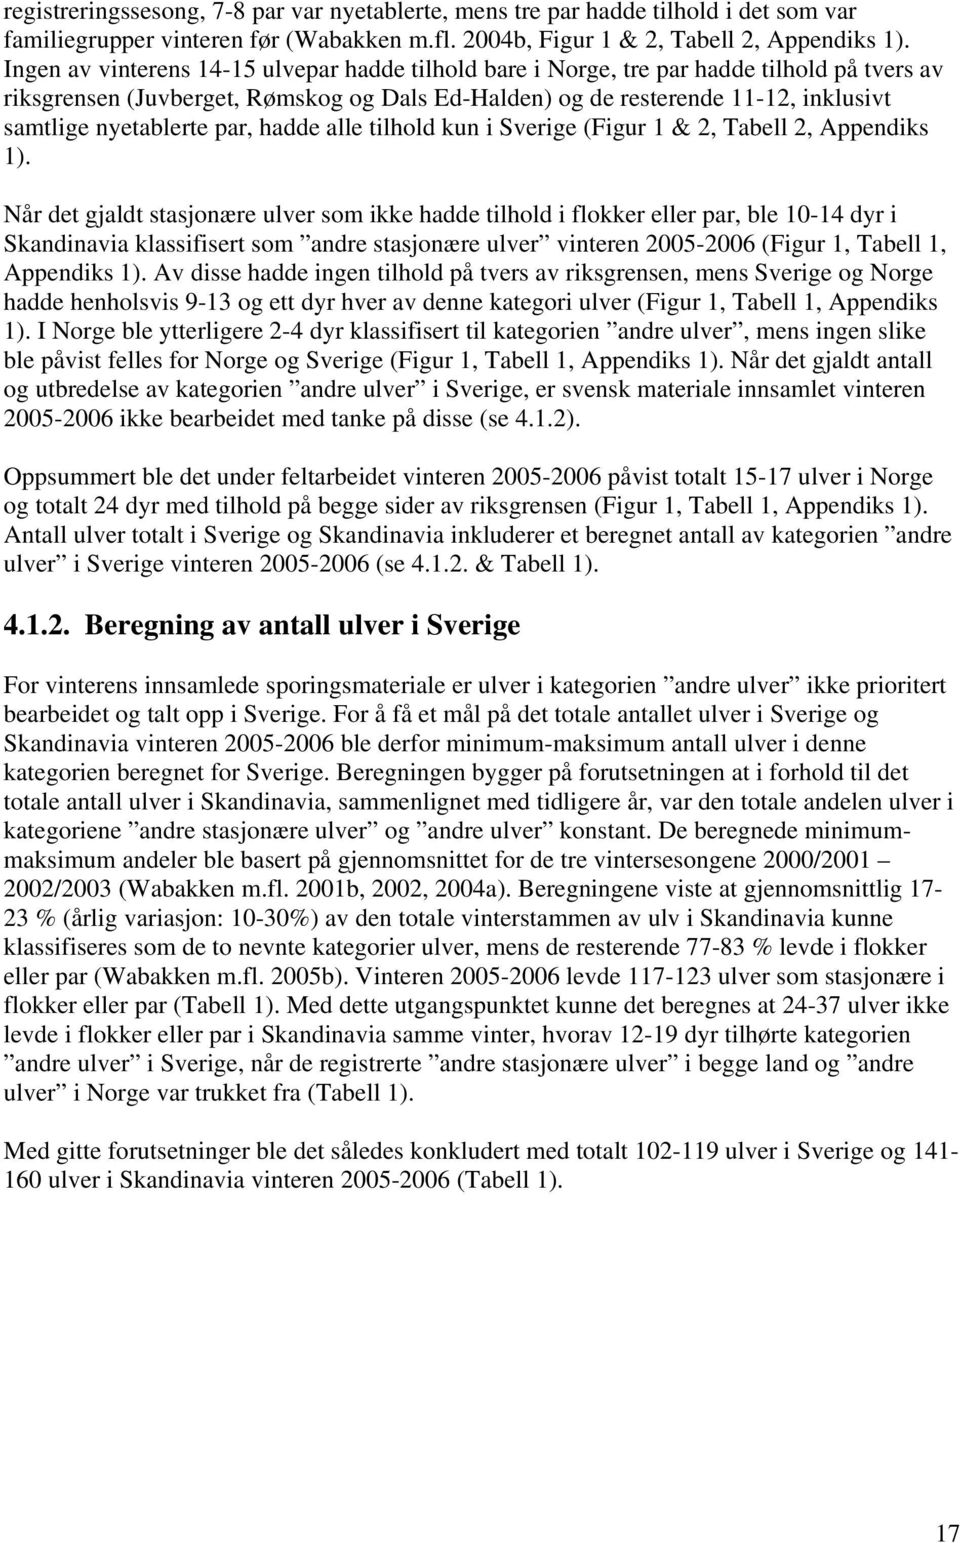 nyetablerte par, hadde alle tilhold kun i Sverige (Figur 1 & 2, Tabell 2, Appendiks 1).